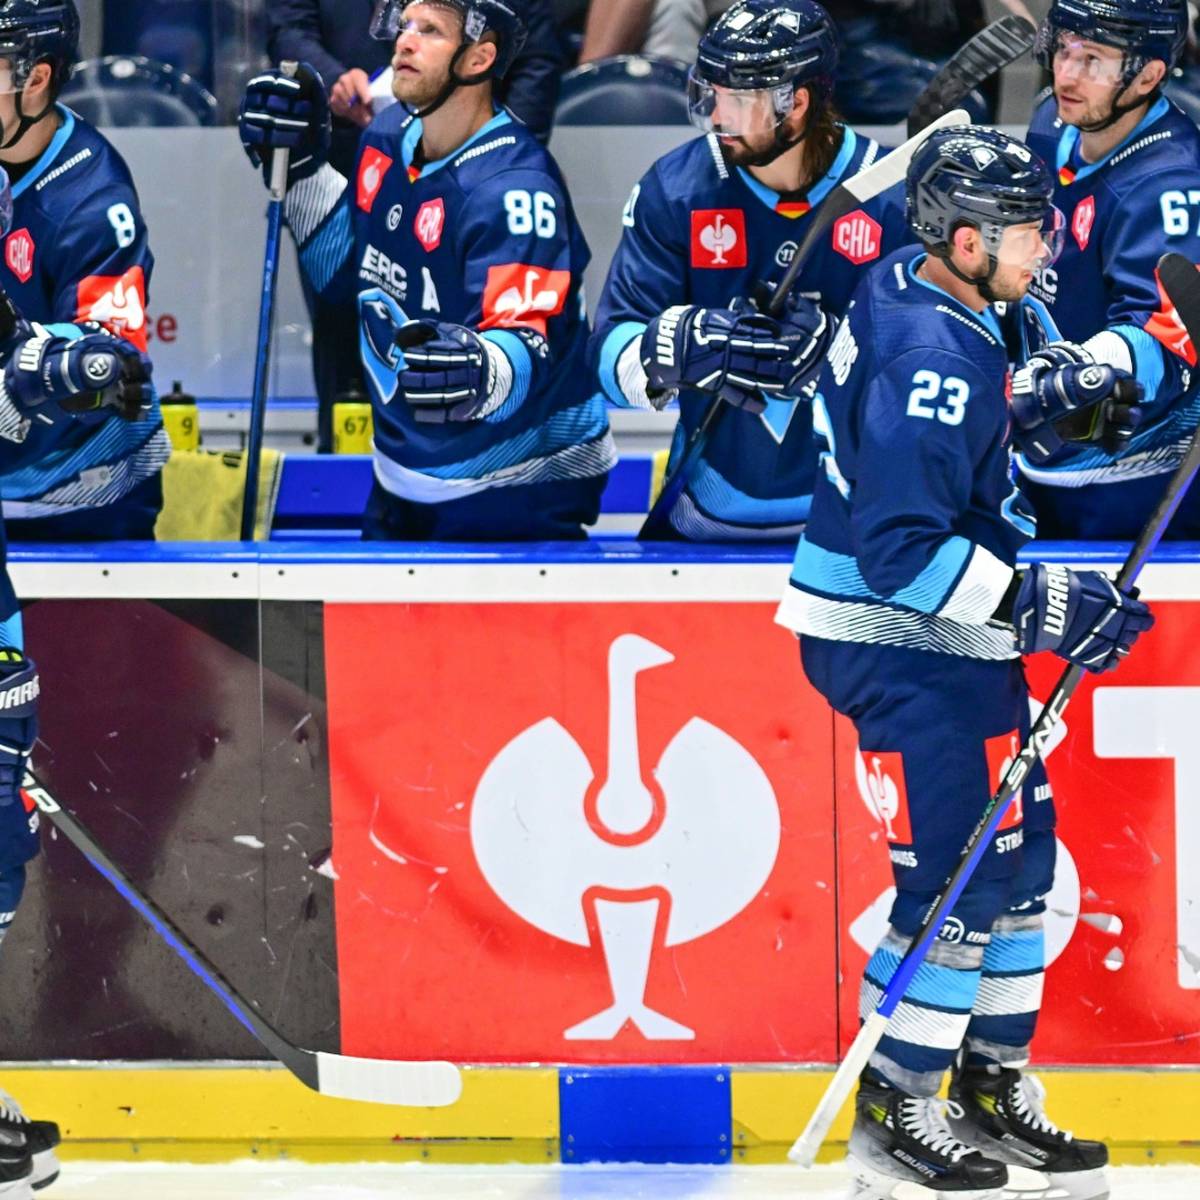 Eishockey Ingolstadt verpasst CHL-Viertelfinale